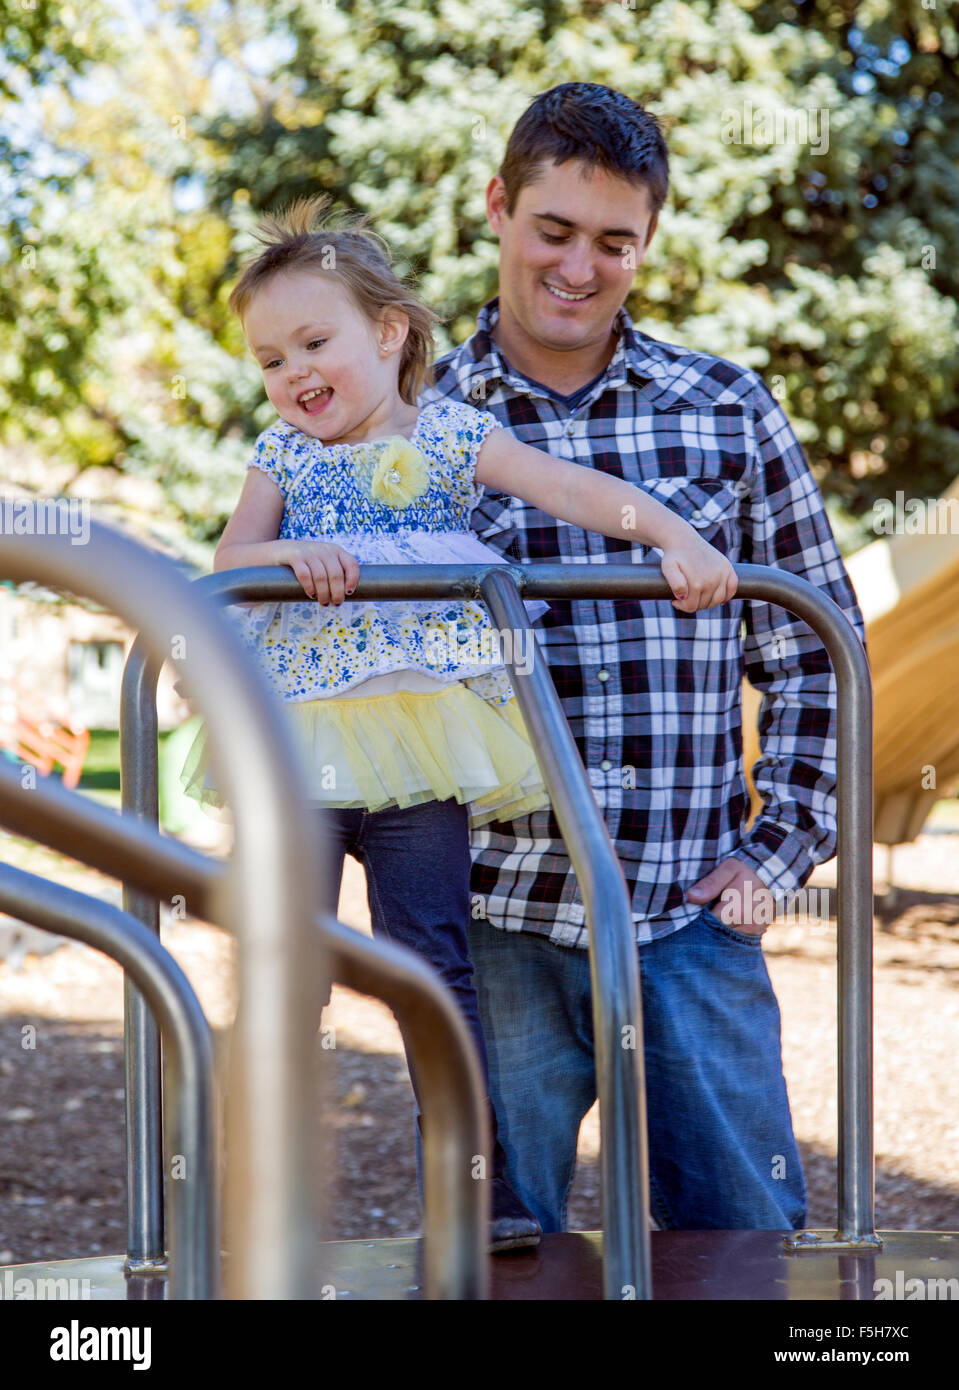 Vater und junge Tochter auf einem Karussell, sonnigen Tag, Park Spielplatz draußen spielen Stockfoto